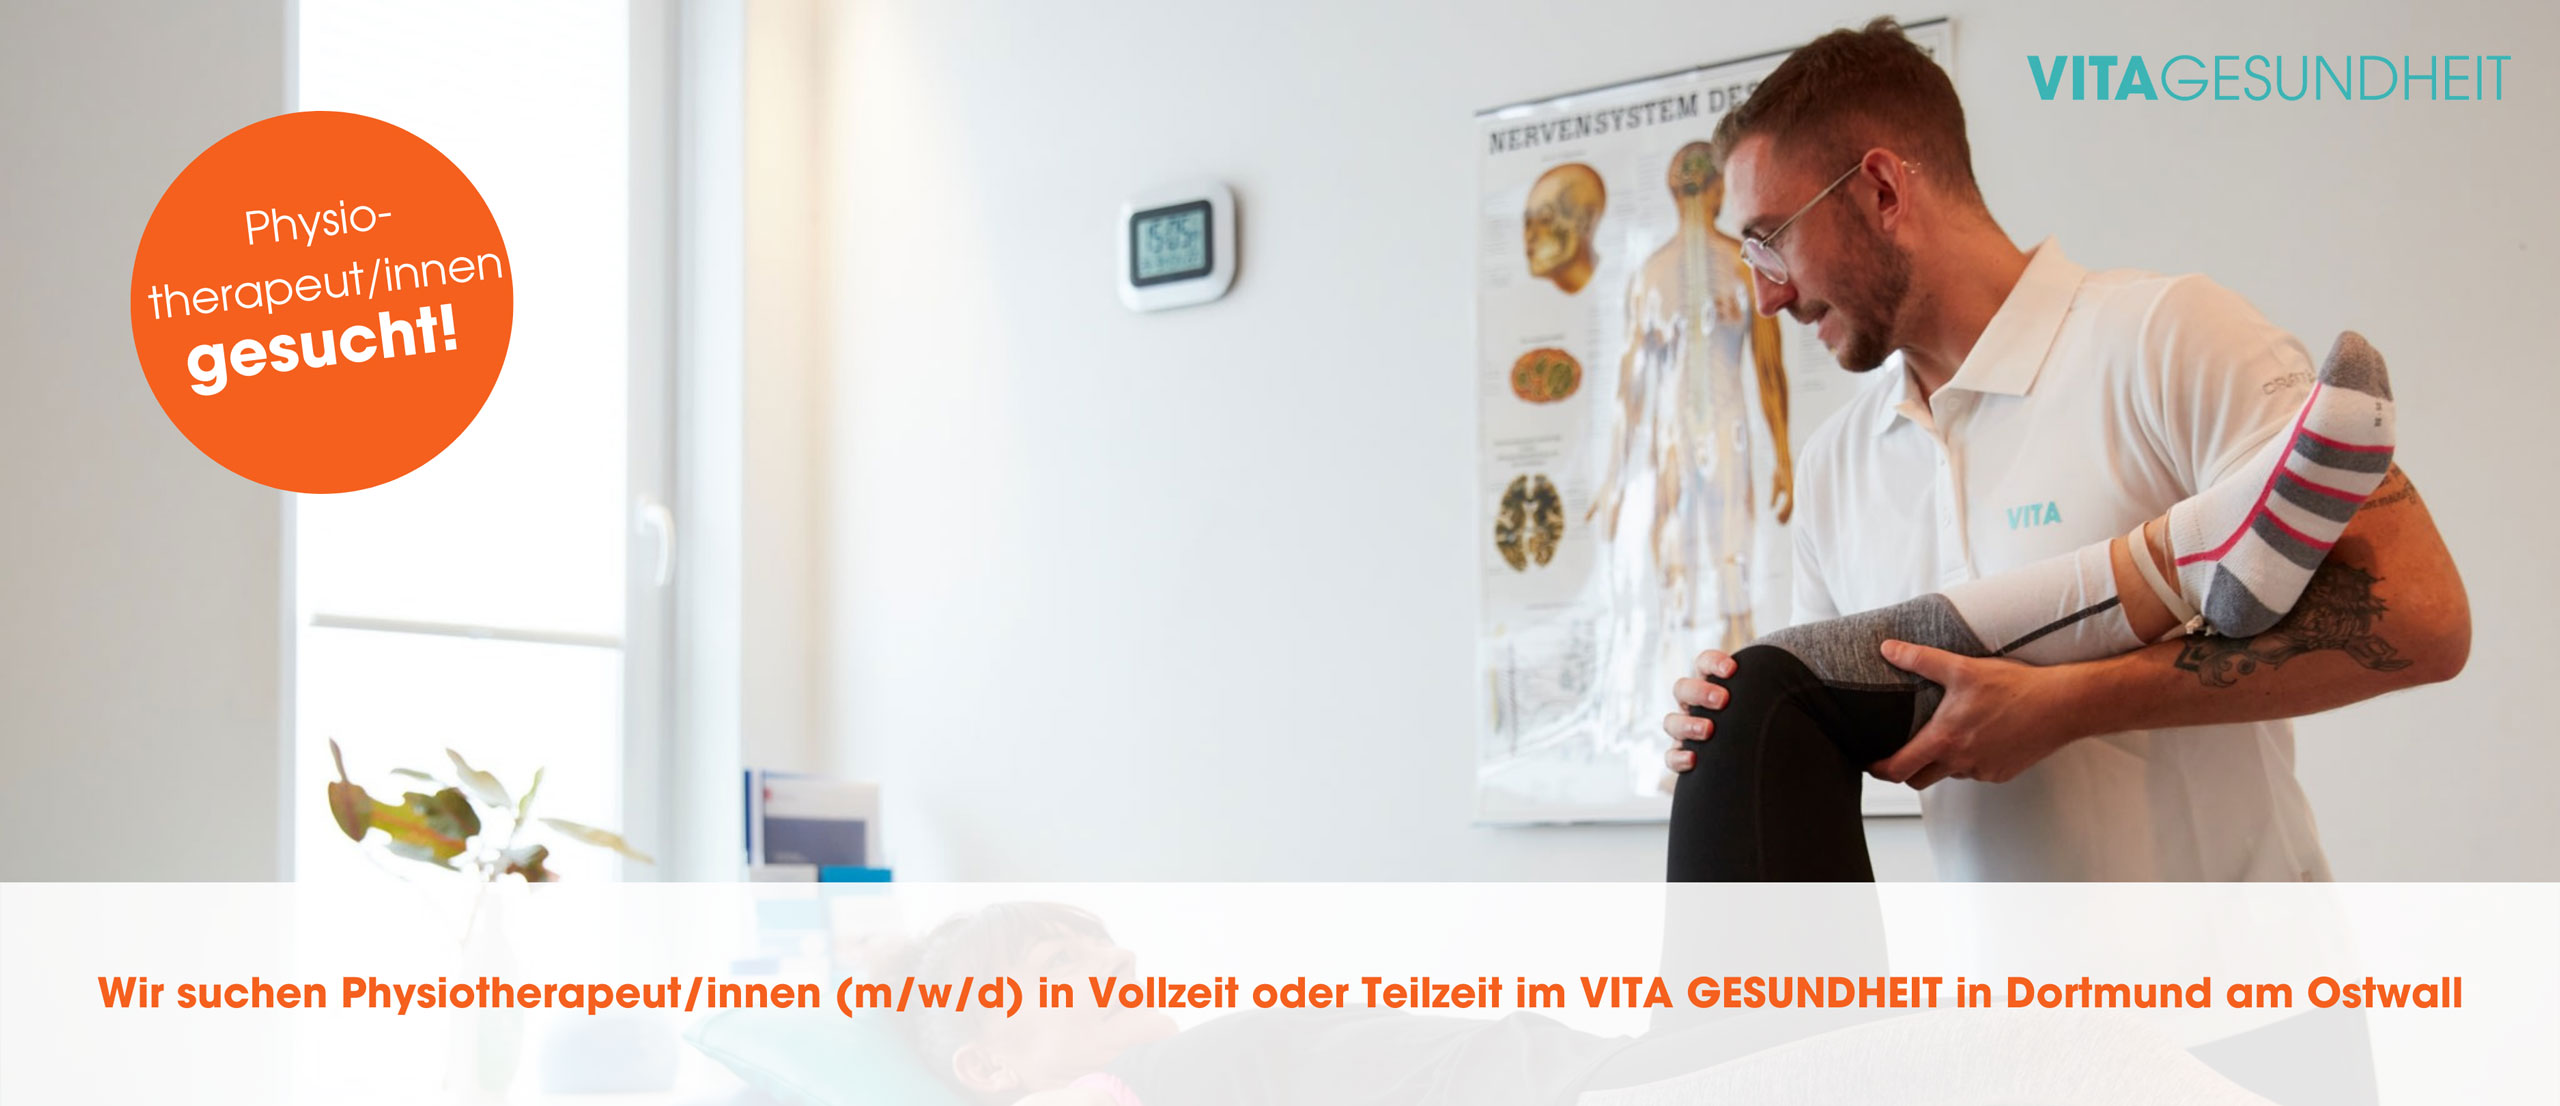 Stellenanzeige Physiotherapeut VITA Gesundheit Dortmund